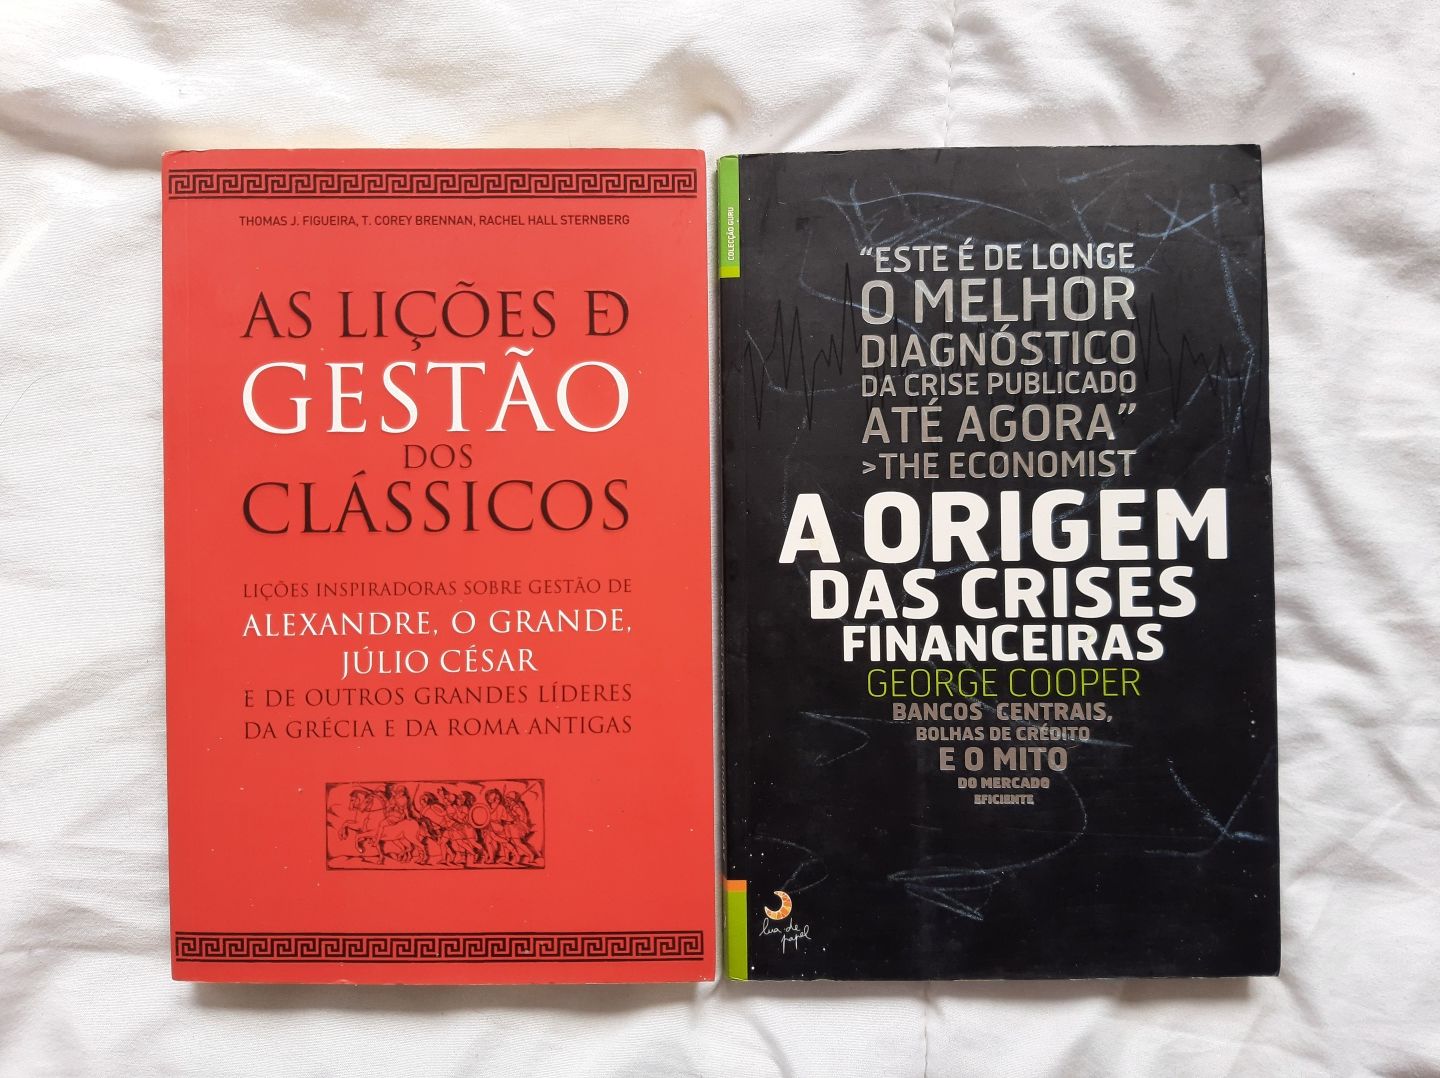 Livros "As lições de Gestão dos Clássicos" e "A Origem ..."